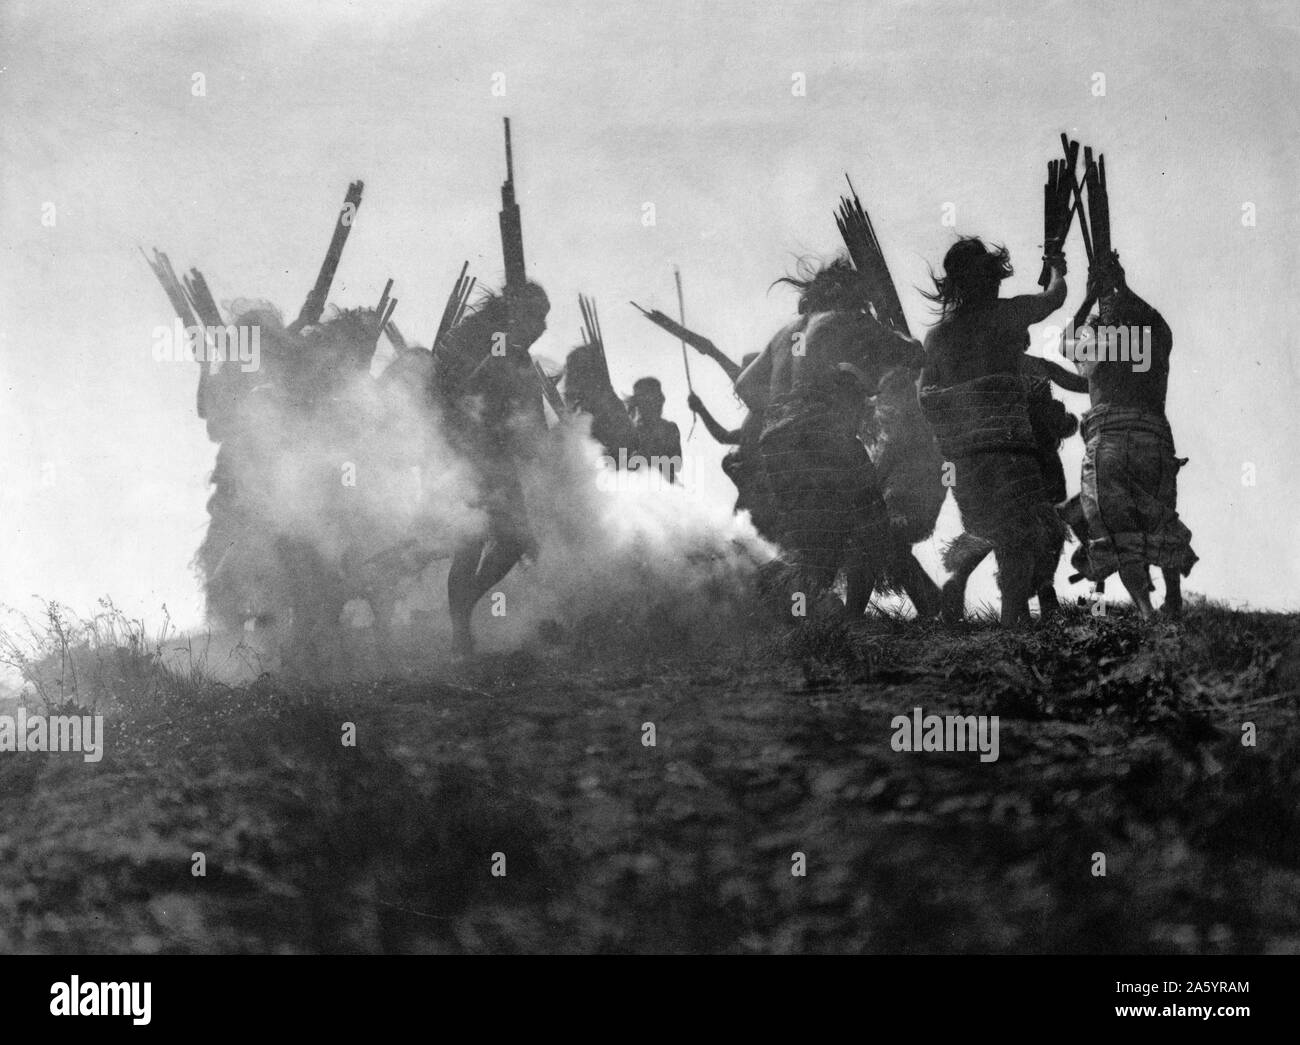 Stampa fotografica di persone il Kwakiutl (Kwakwaka'wakw, Indiani del Nord America) eseguendo una danza rituale per ripristinare un Luna eclissata. Fotografata da Edward S. Curtis (1868-1952) American etnologo e fotografo del West americano e dei Nativi Americani i popoli. Datata 1914 Foto Stock